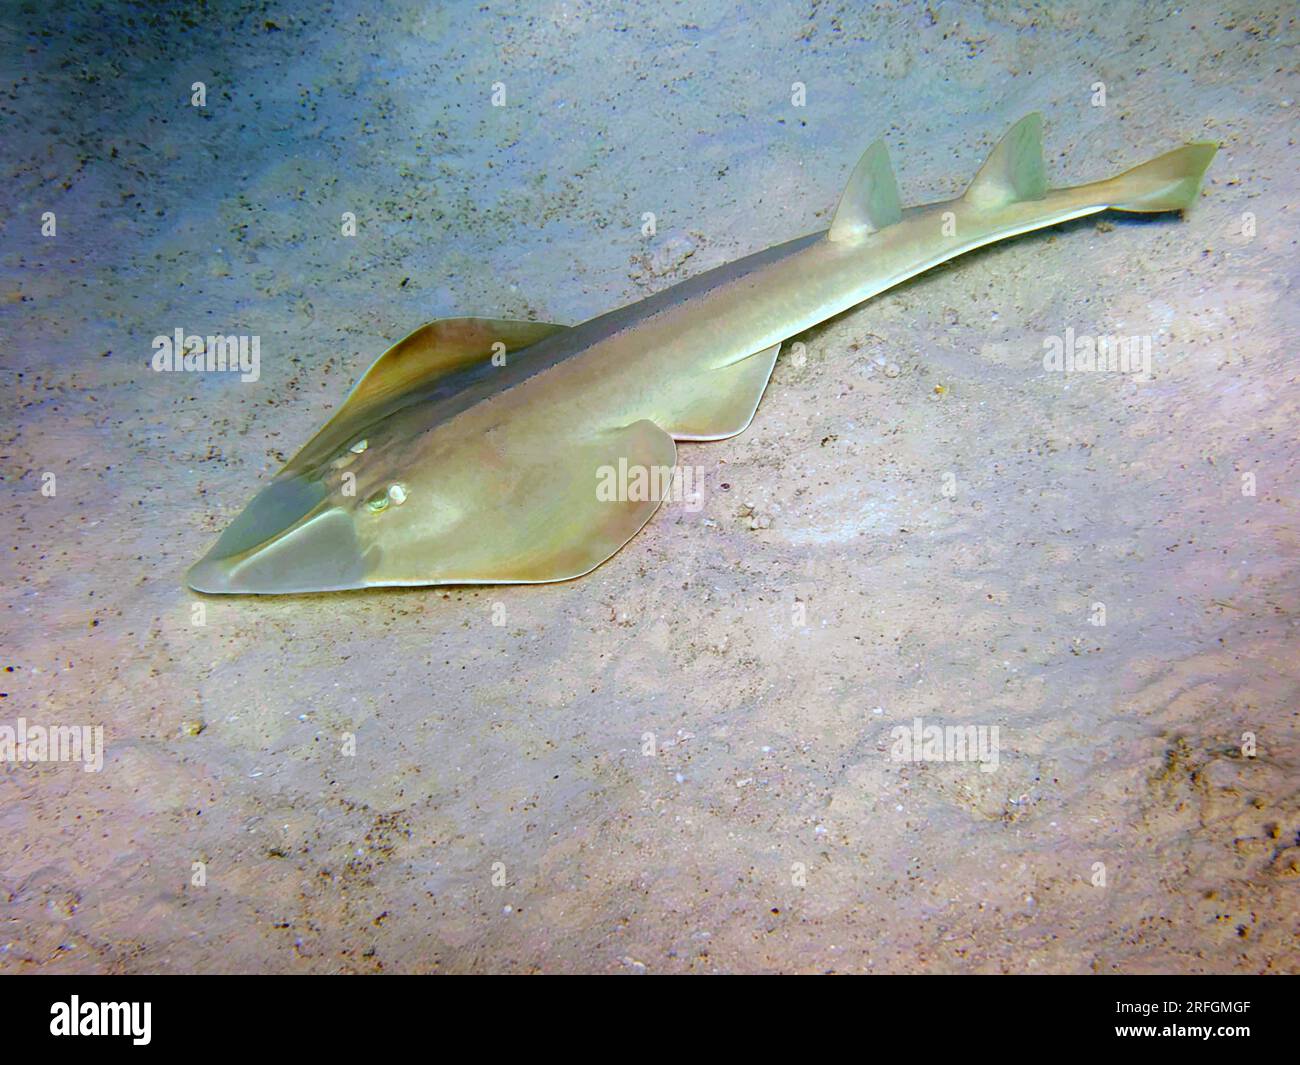 Le guitarfish halavi - (Glaucostegus halavi), photo sous-marine dans la mer Rouge Banque D'Images